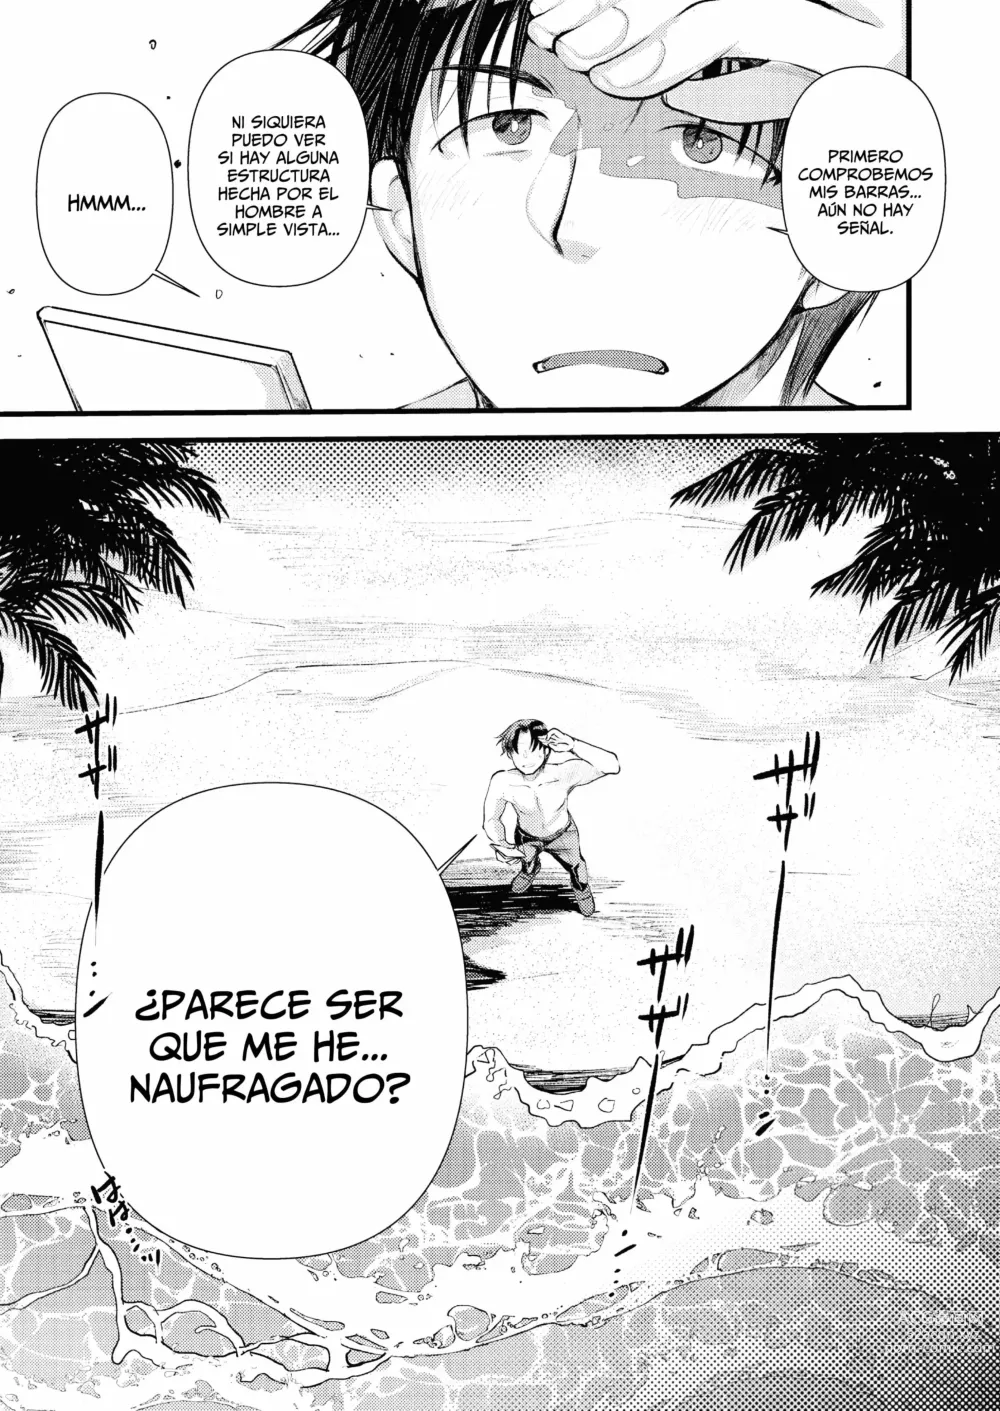 Page 13 of manga Vida Relajada En Una Isla Desierta Con Una Princesa Caballero De Nivel 1 - Capítulo 1